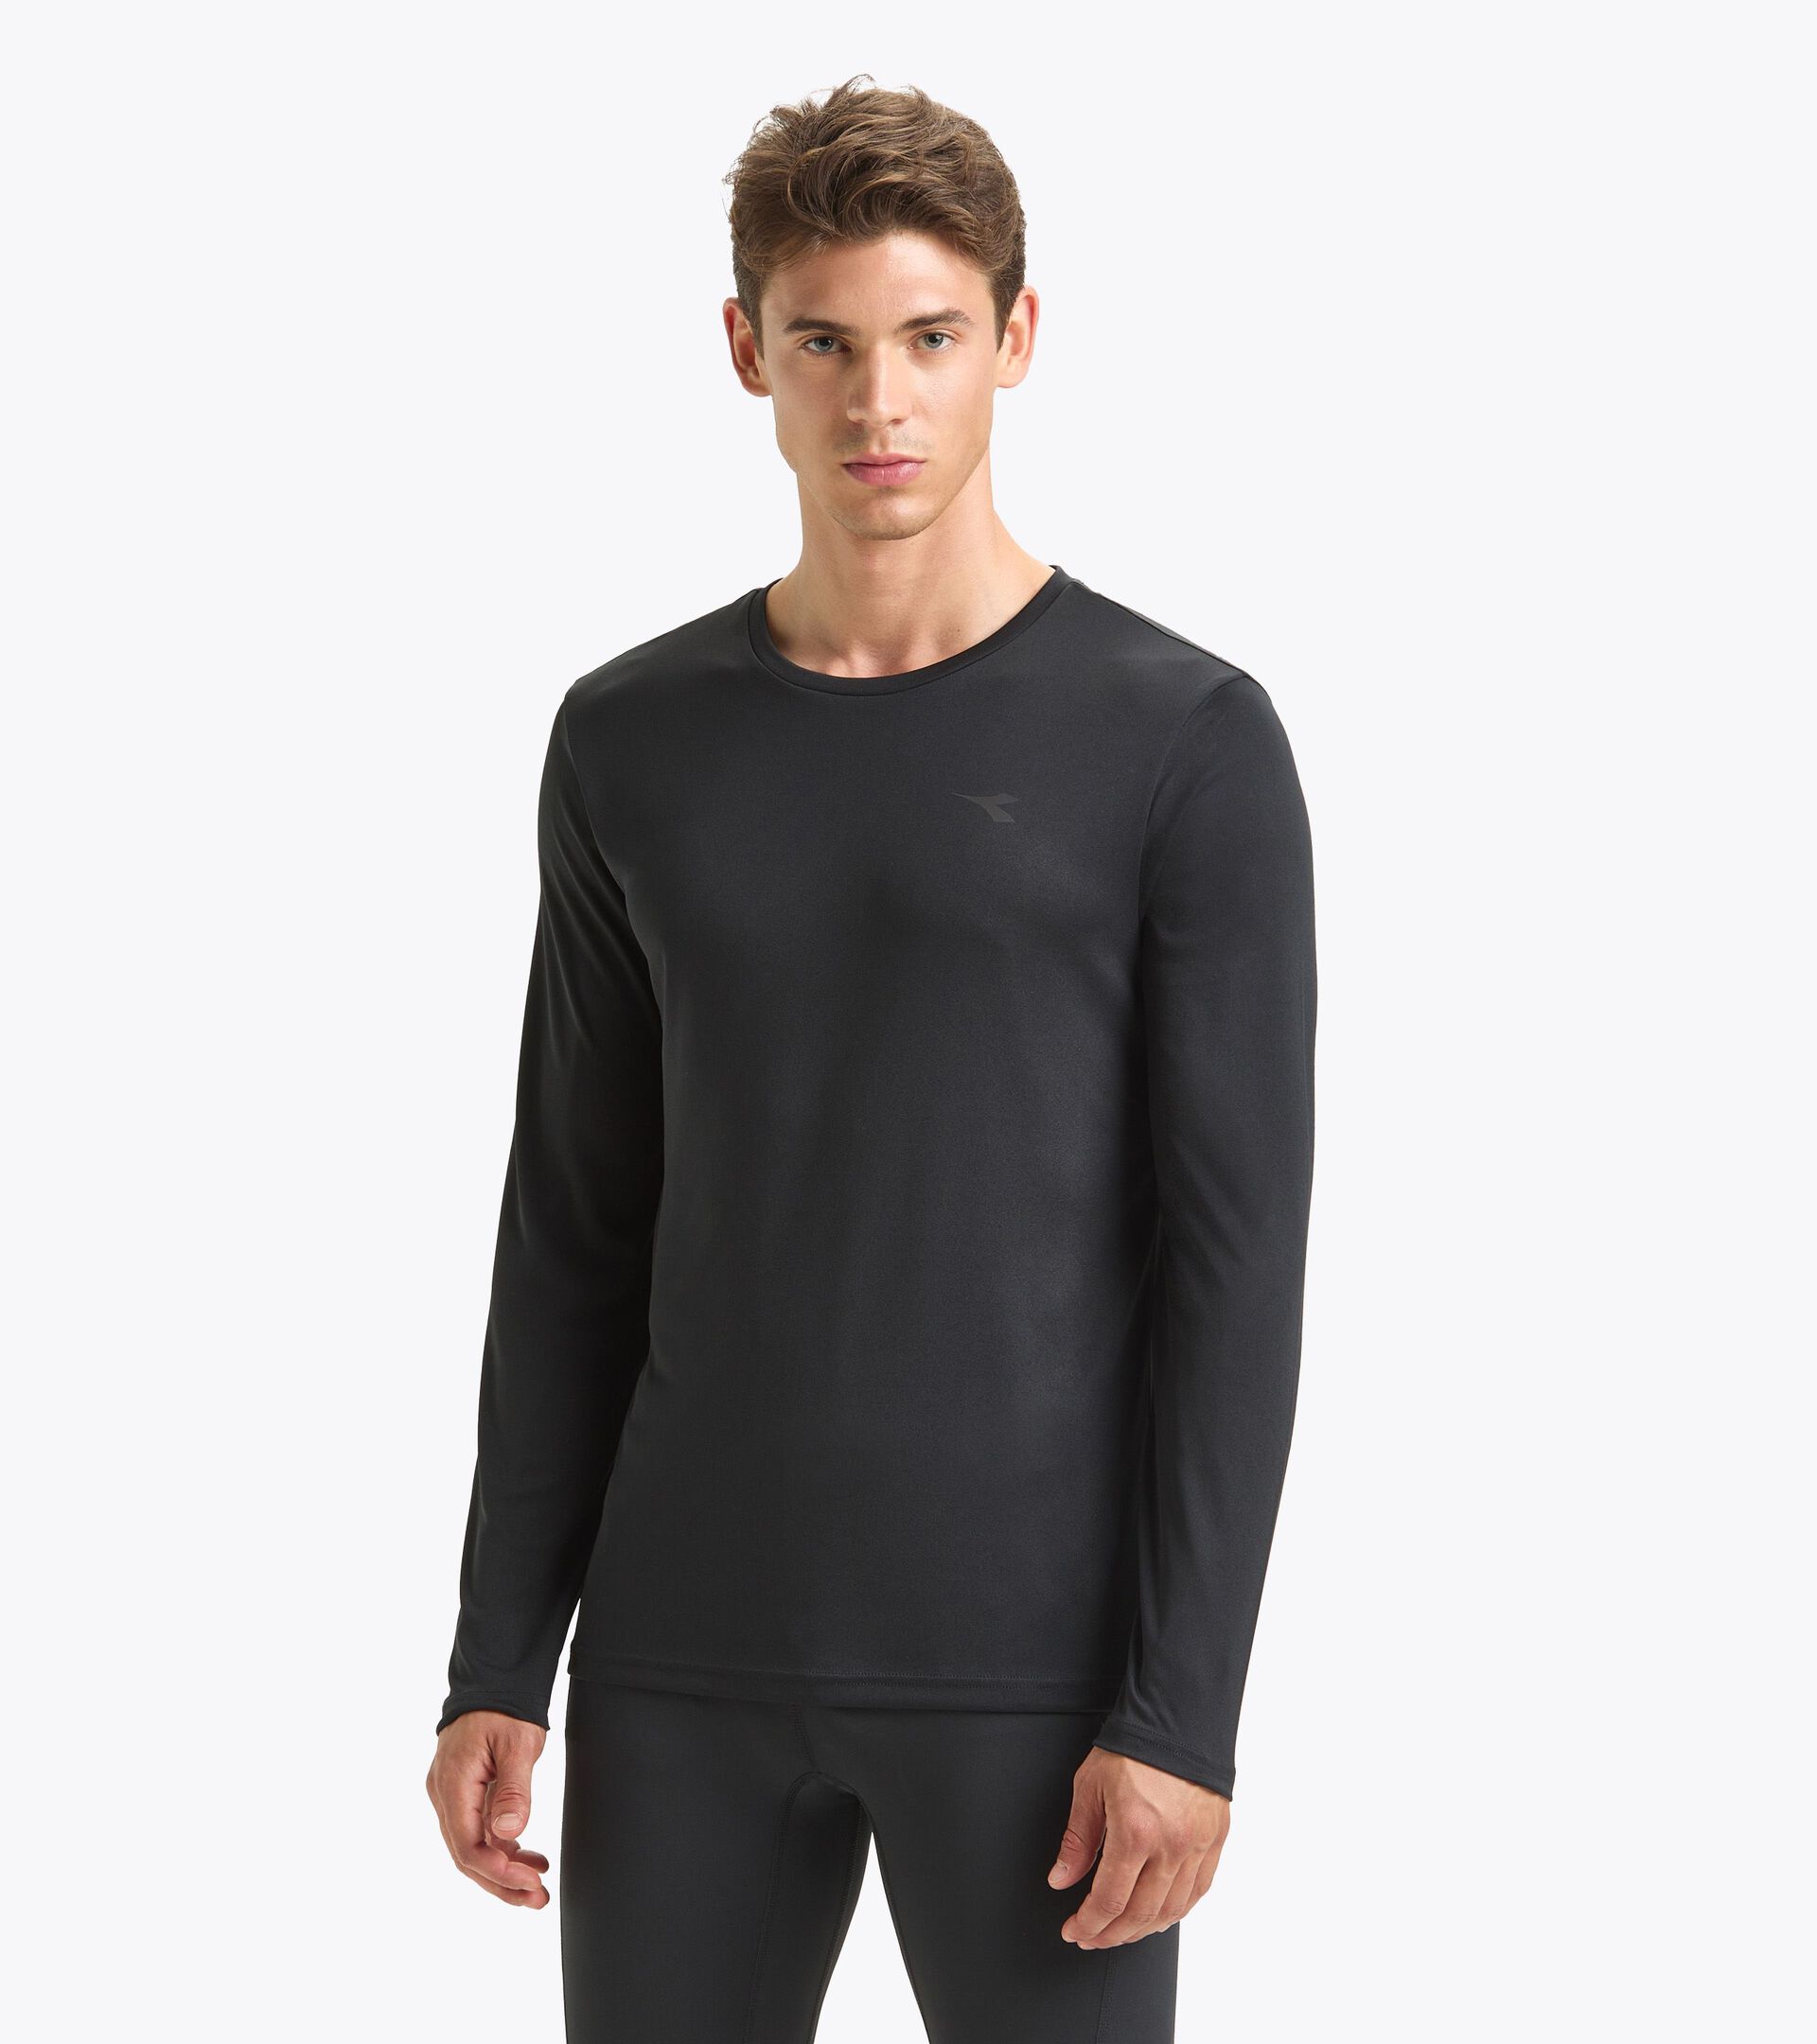 LS T-SHIRT RUN Long-sleeved shirt - Men - Diadora Online Store CA